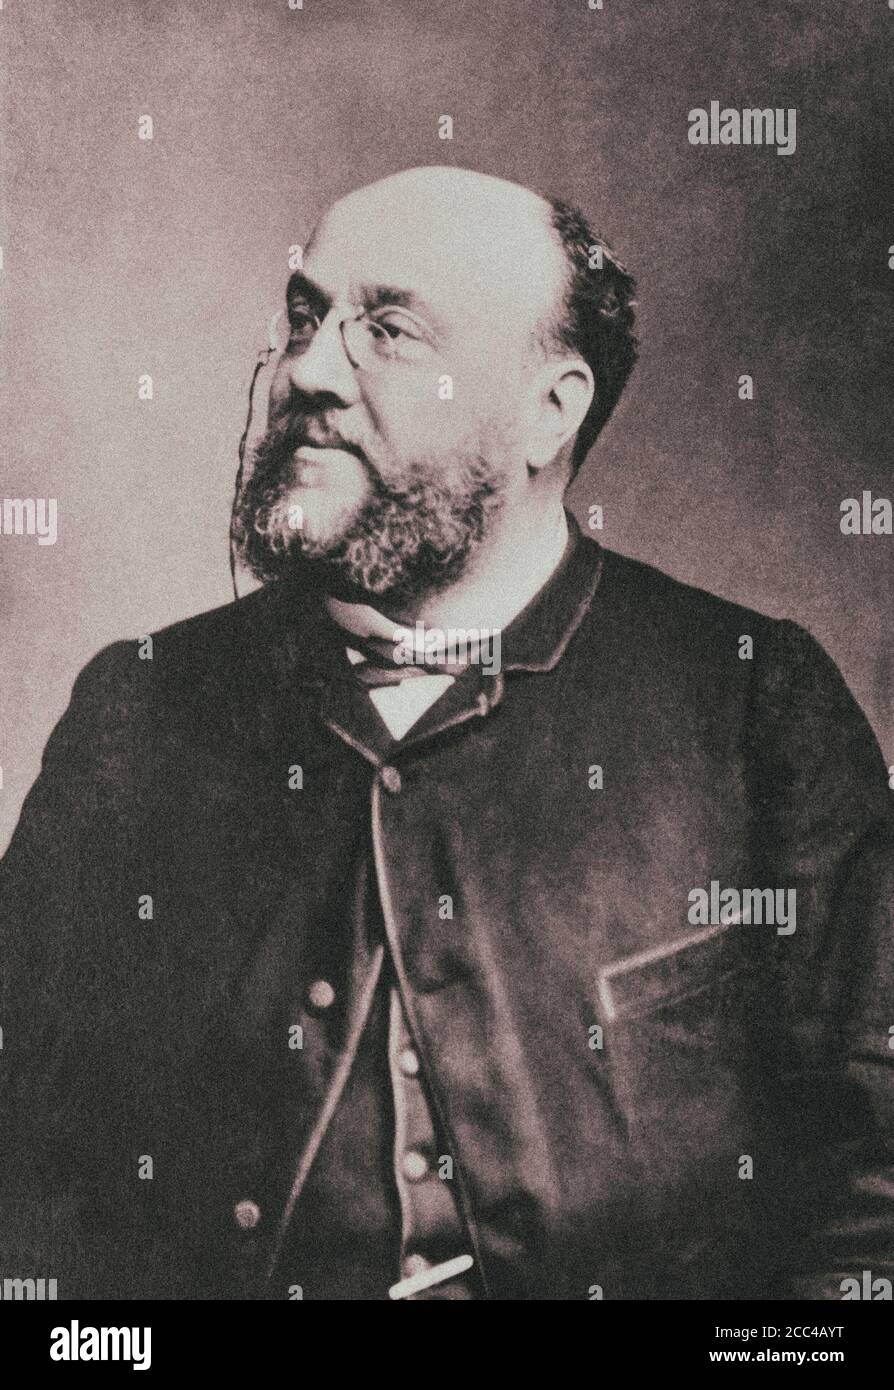 Charles Lamoureux (1834-1899), französischer Dirigent und Geiger, Gründer der Gesellschaft für neue Konzerte, die zu den Lamoureux Concerts wurde. Stockfoto